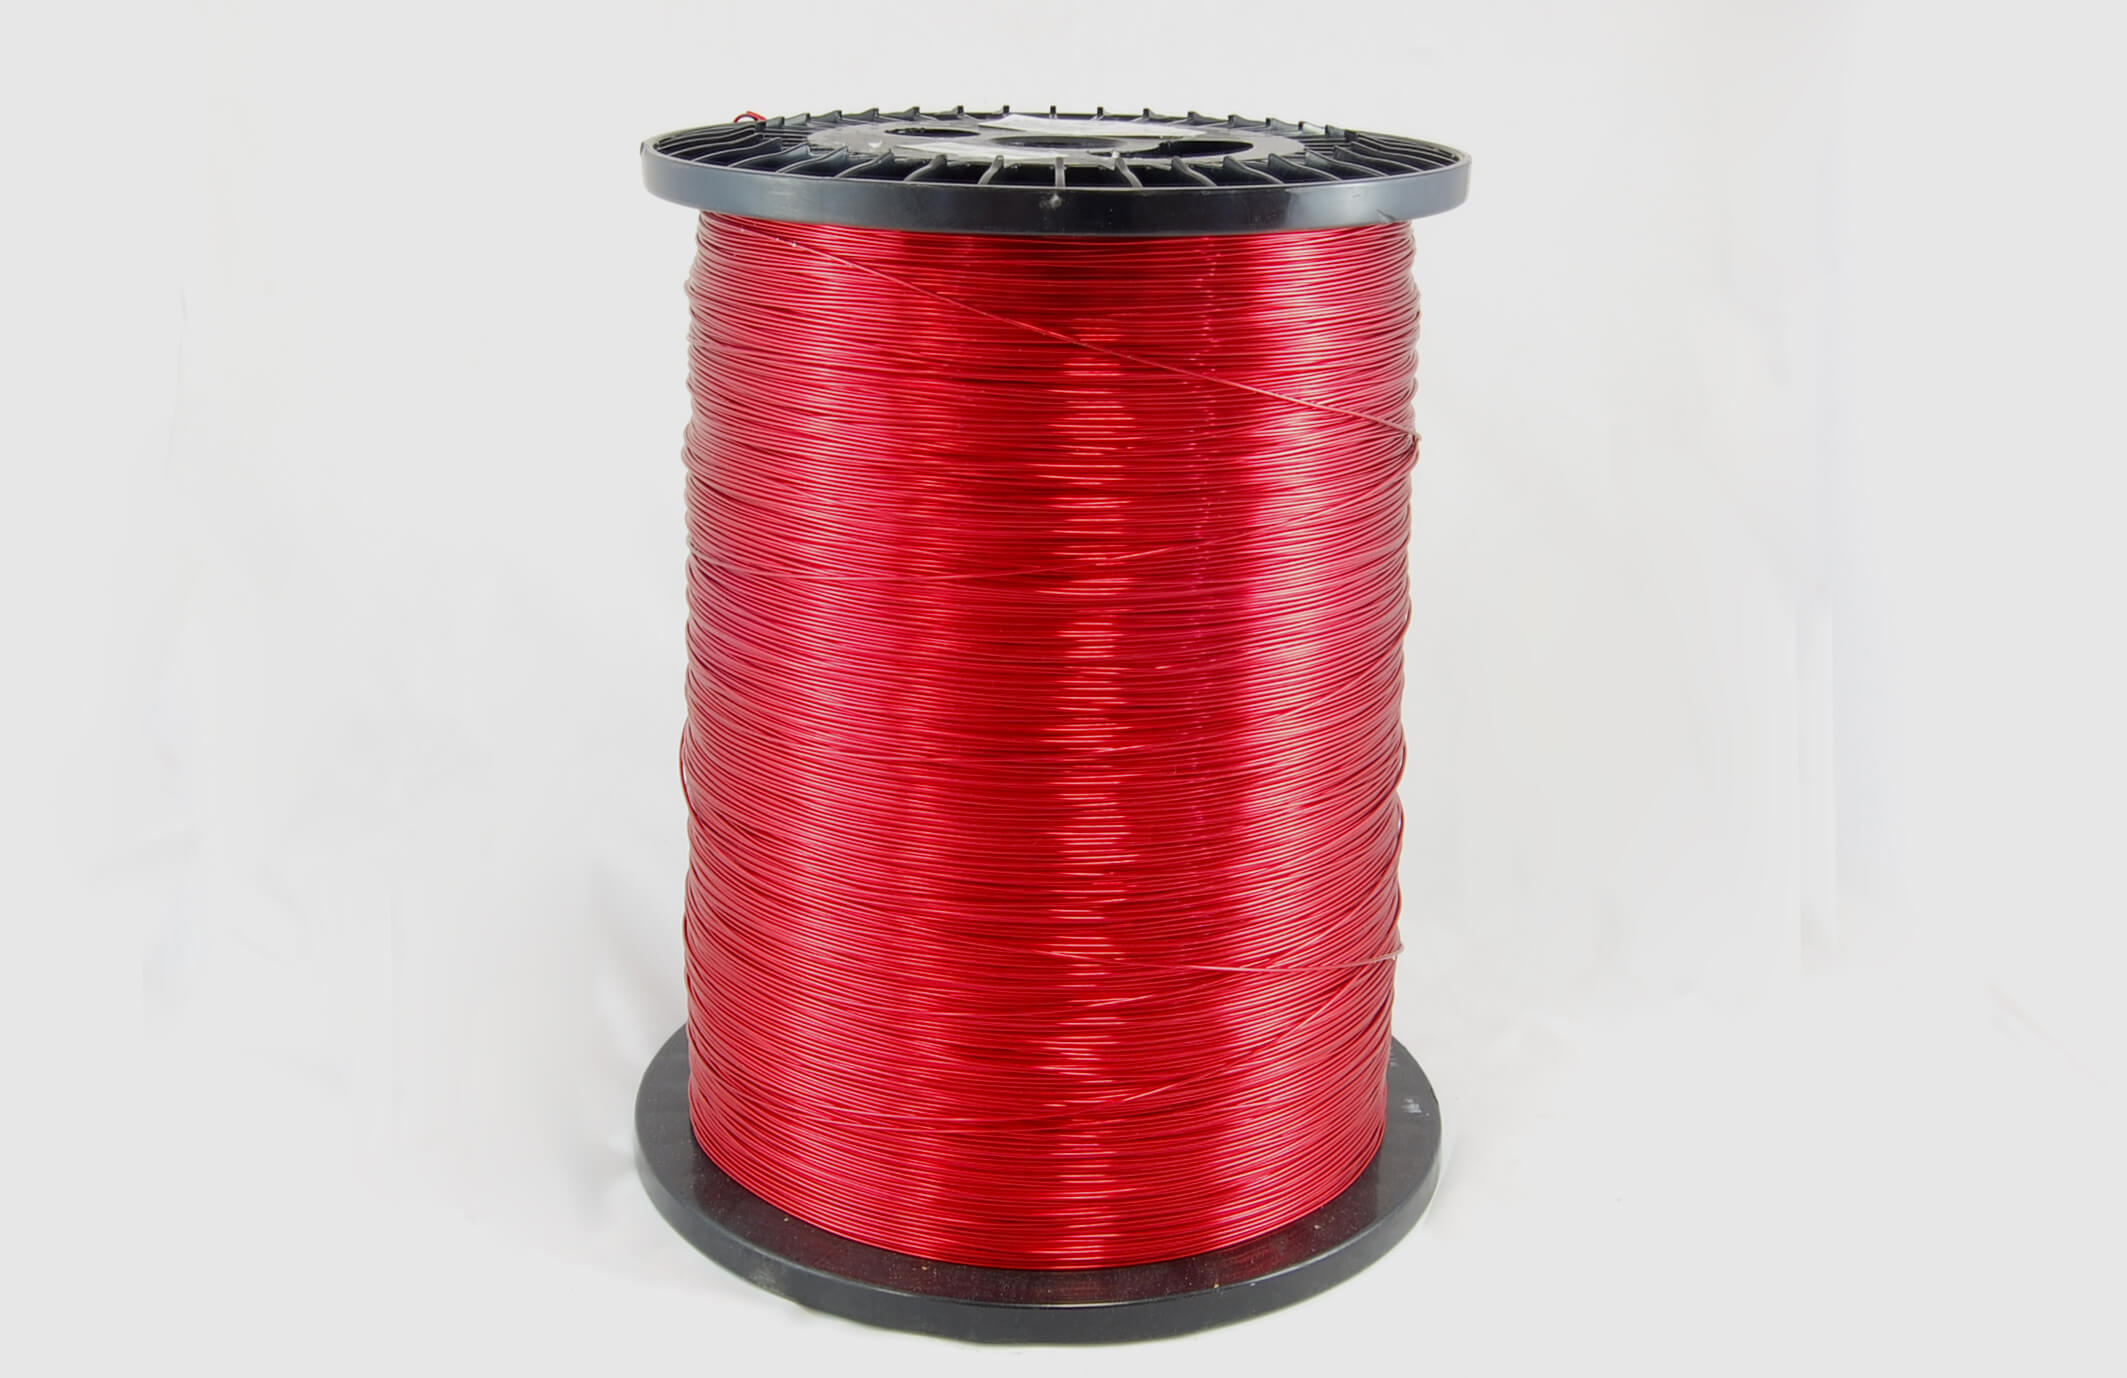 #17 Single Nysol  Round SNSR MW 80 Copper Magnet Wire 155°C, red, 85 LB box (average wght.)